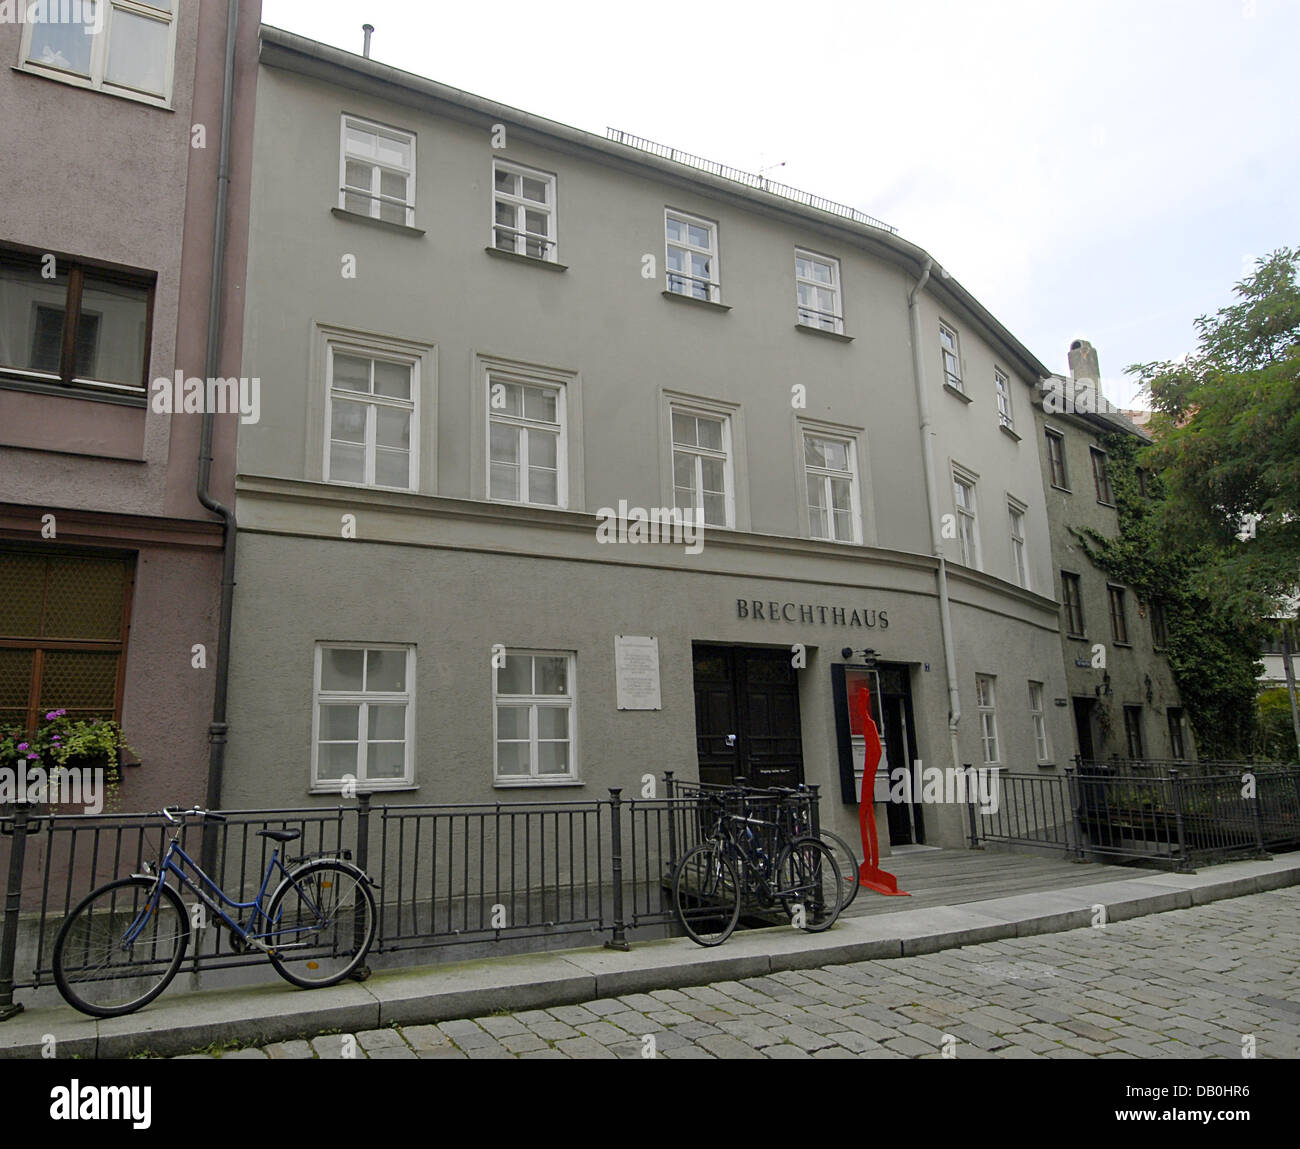 Das Bild zeigt das Geburtshaus des deutschen Dichters Berthold Brecht in Augsburg, Deutschland, 30. August 2007. Foto: Stefan Puchner Stockfoto